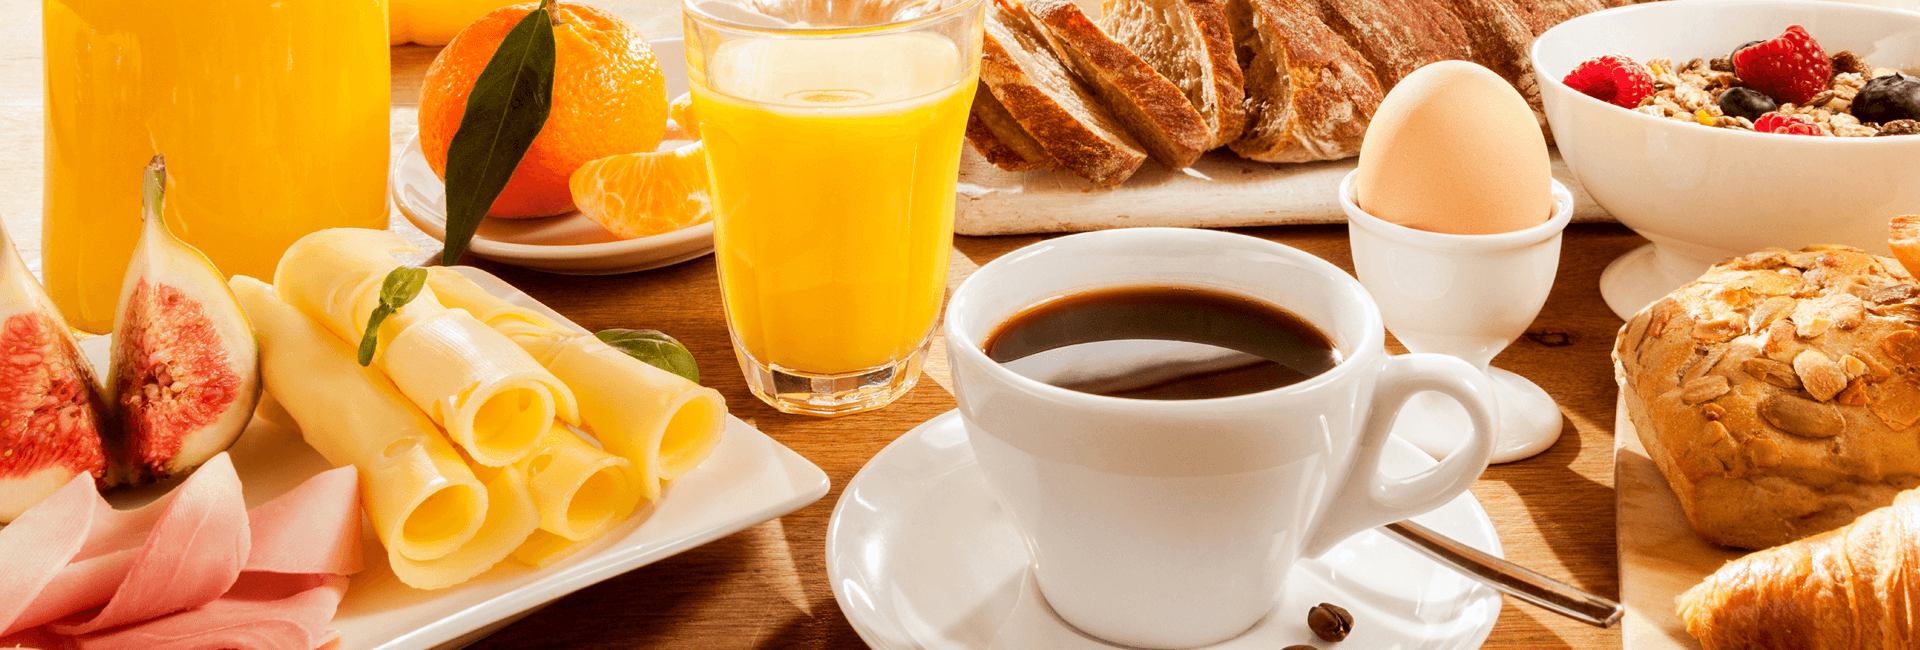 Brunchtafel met koffie, jus d'orange en een eitje